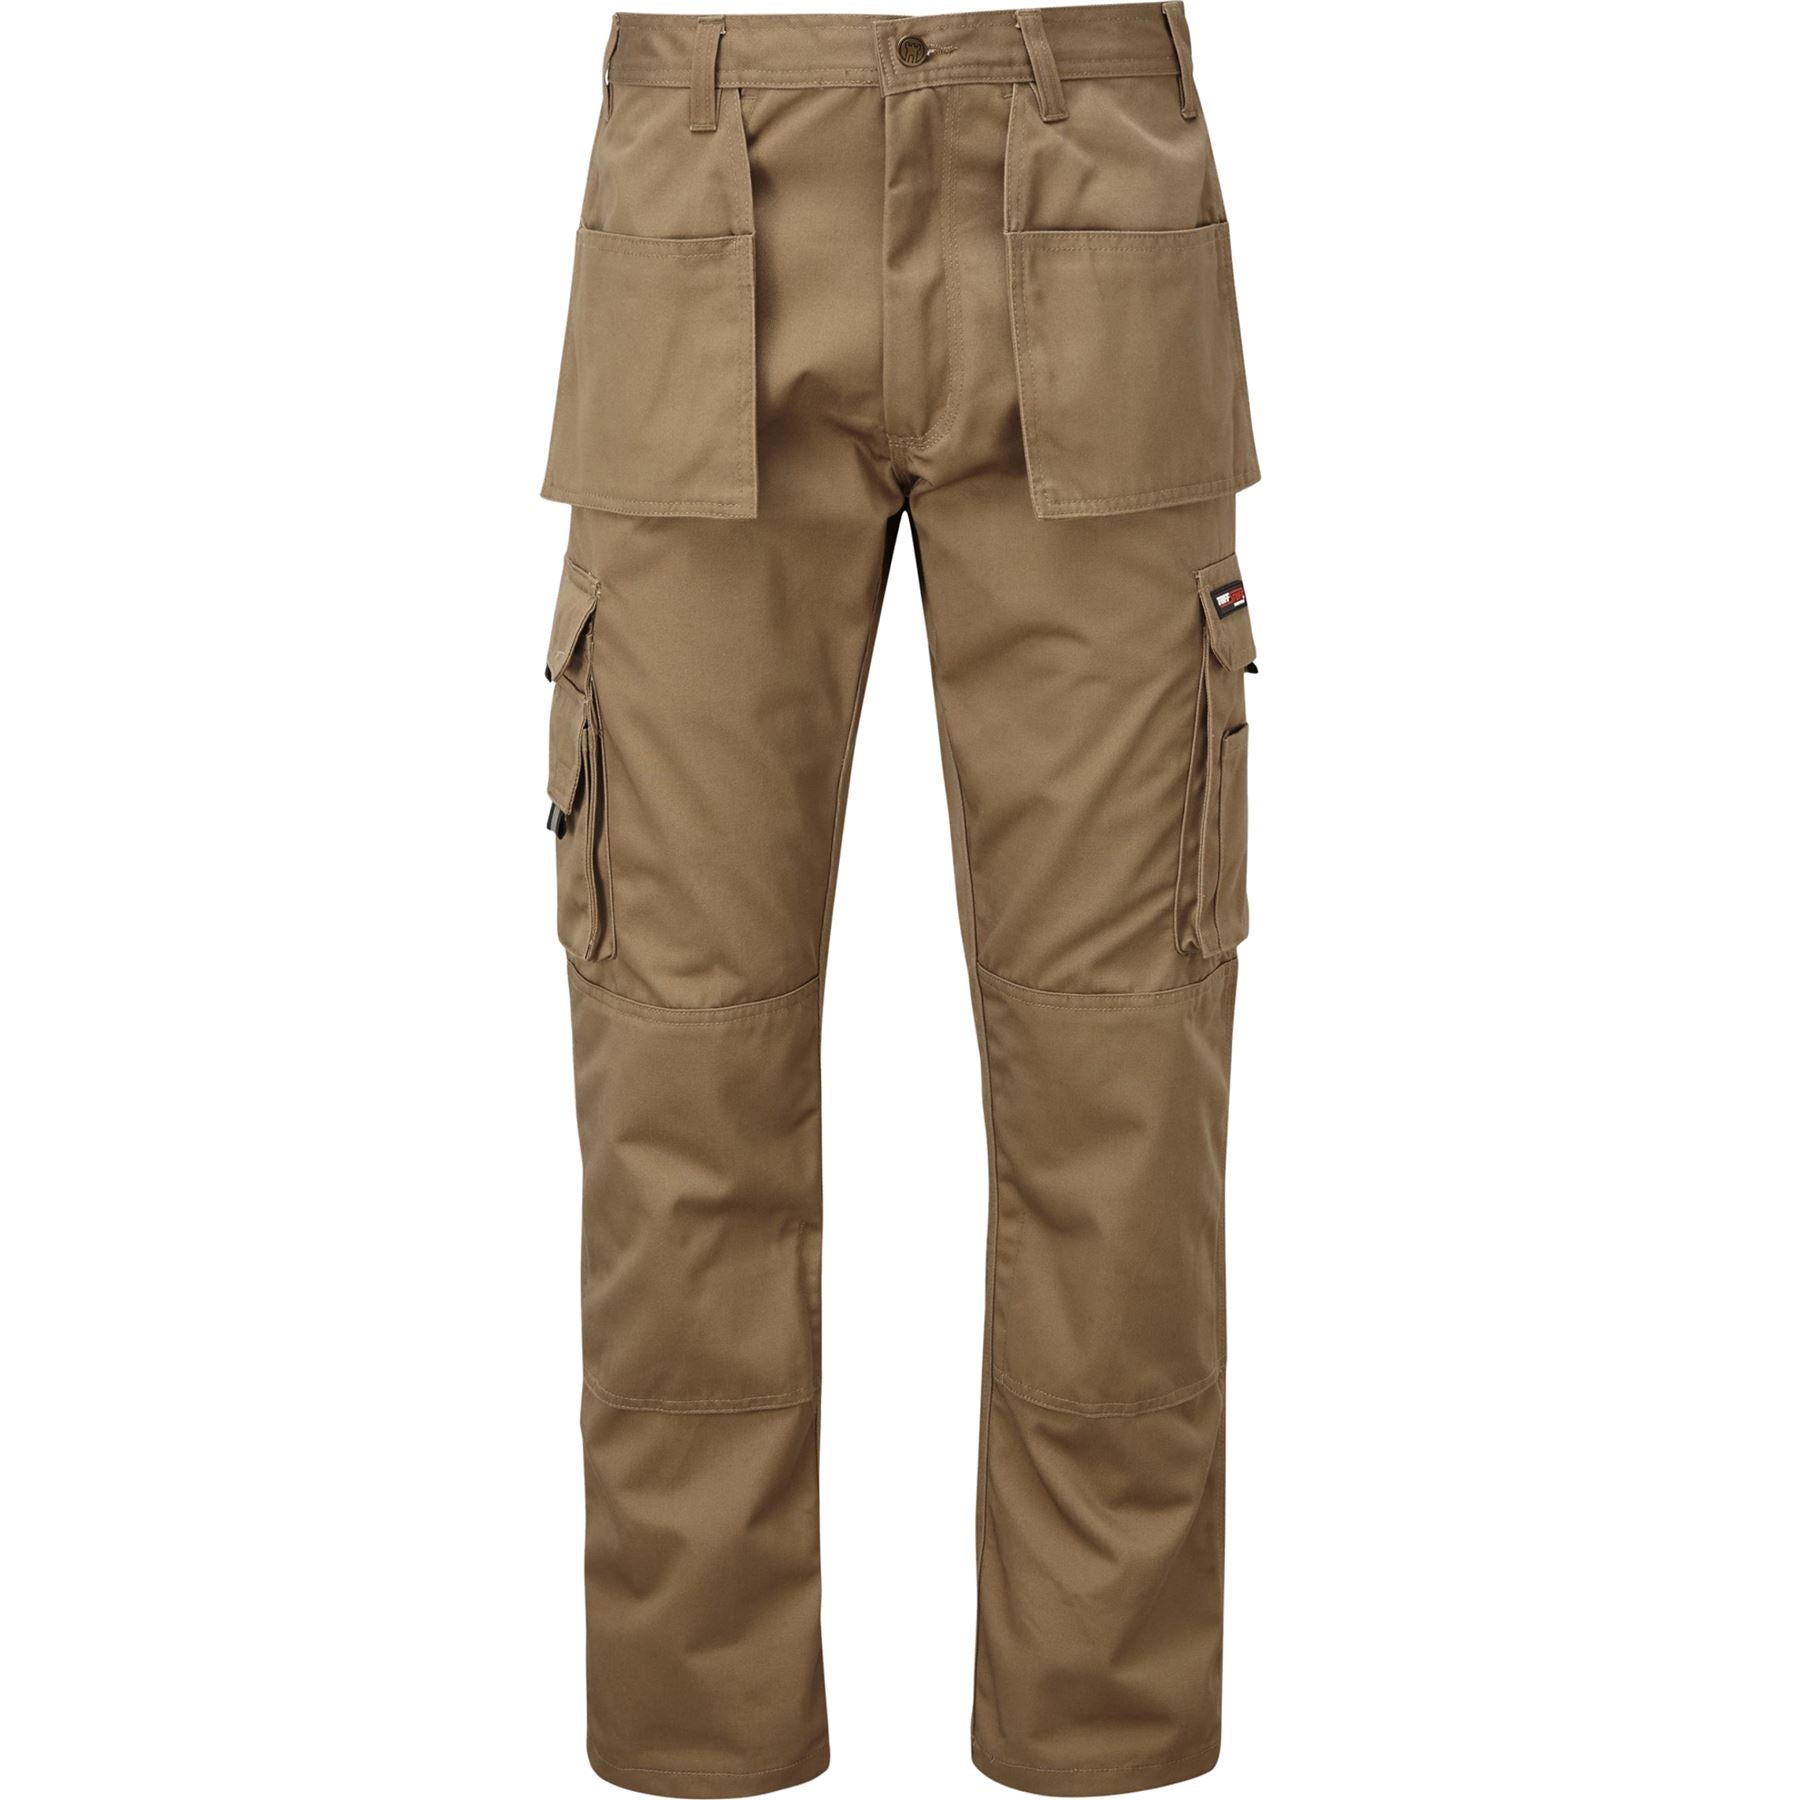 TuffStuff Pro Worker Work Trousers Holster Pockets Hard Wearing Trouser 711